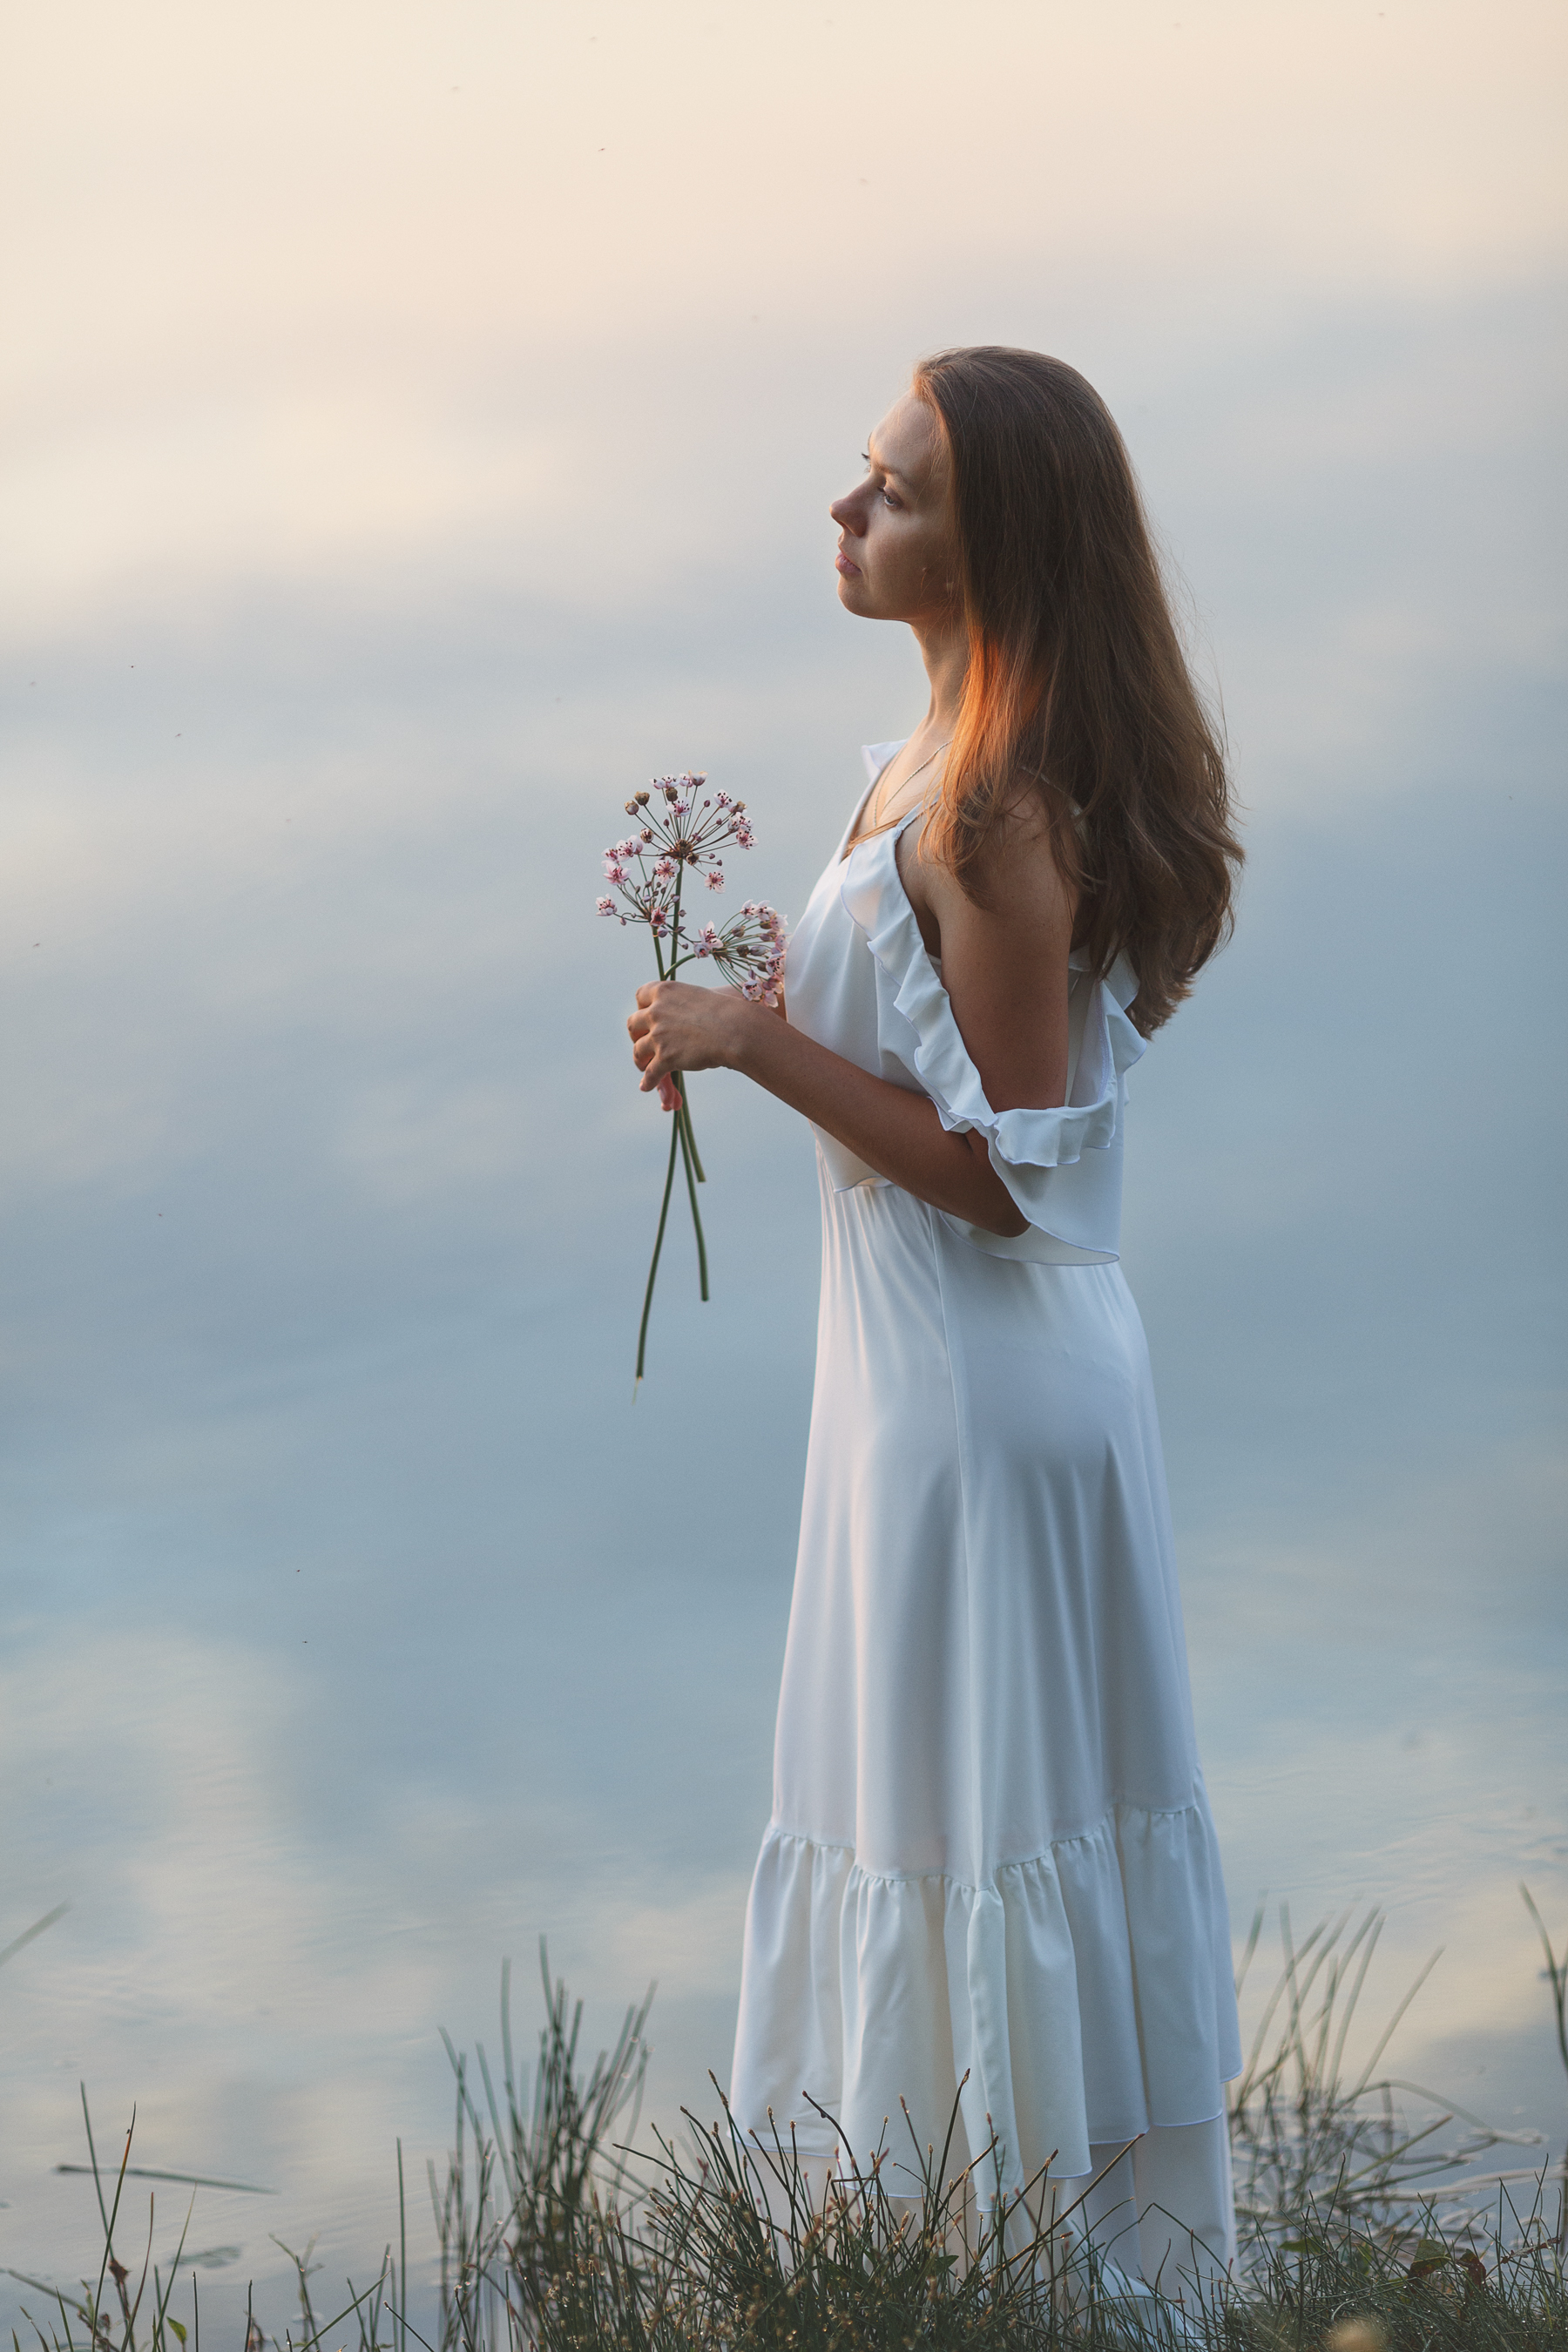 Oxana Vedmedenko Women Brunette Dress White Clothing Flowers Sky 1800x2700